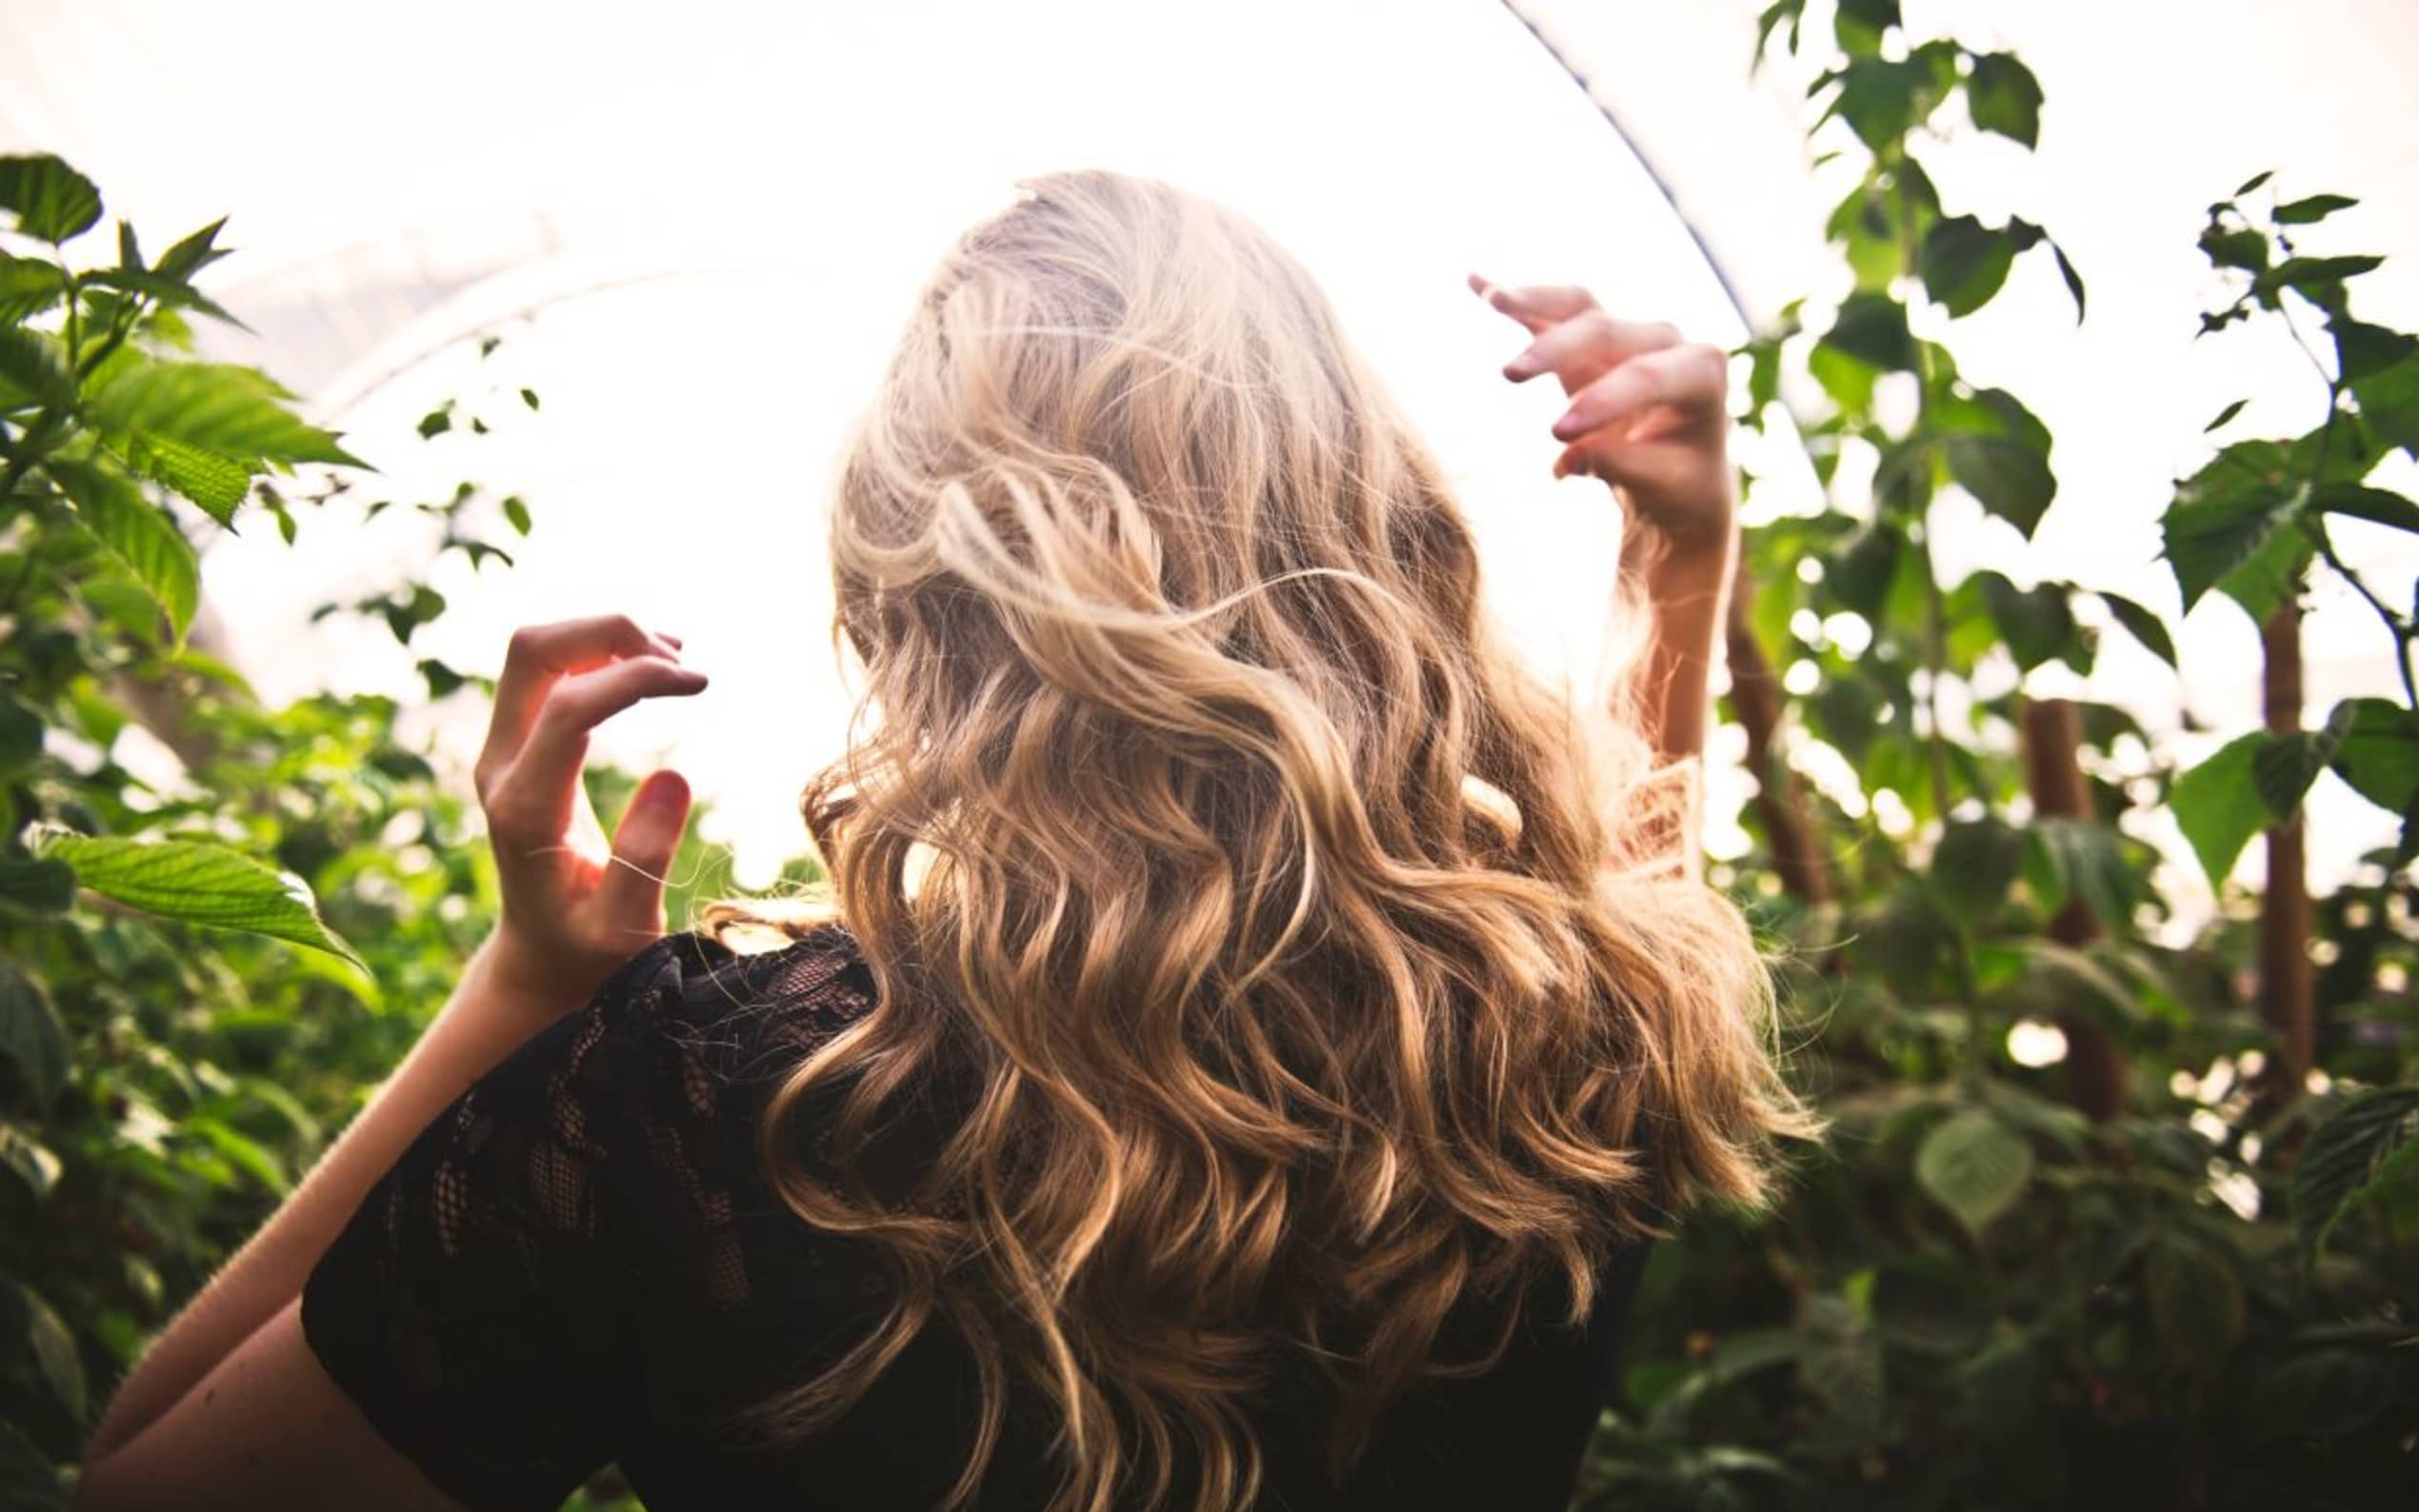 Styla ditt hår - skapa naturliga vågor